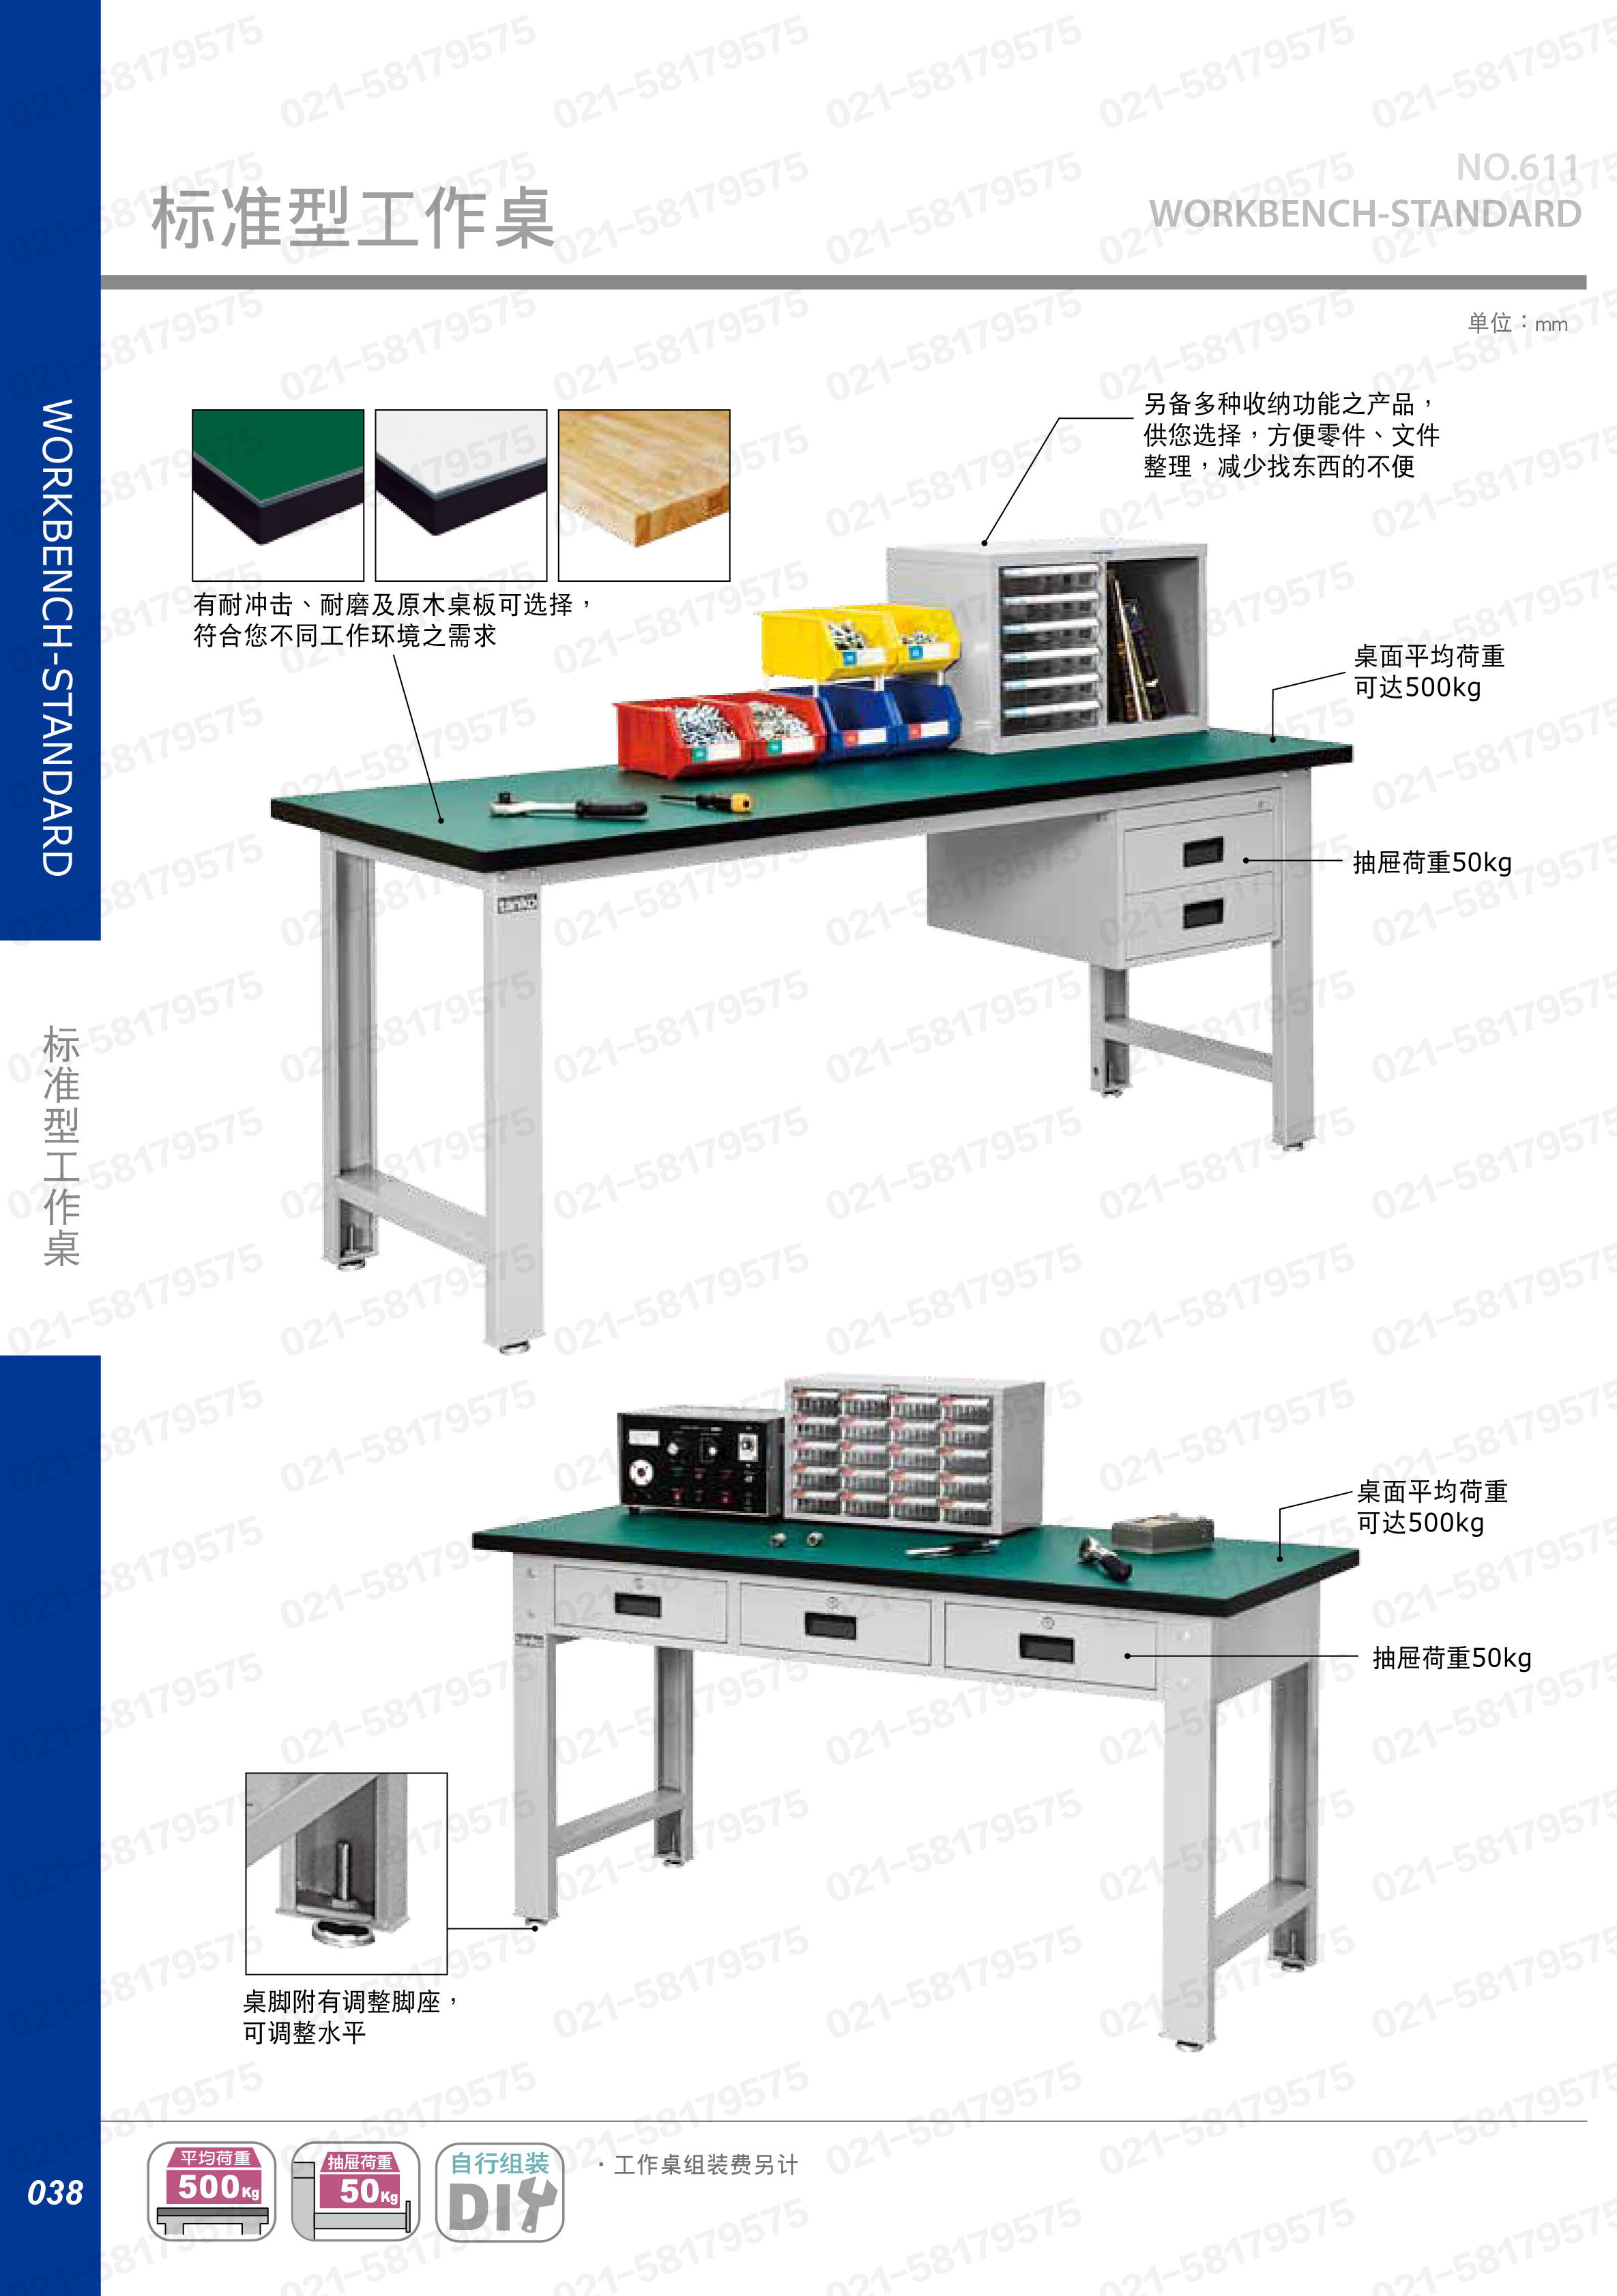 轻型工作桌1800×750×800mm 原木桌板 带三横抽,WBT-5203W,5D2944